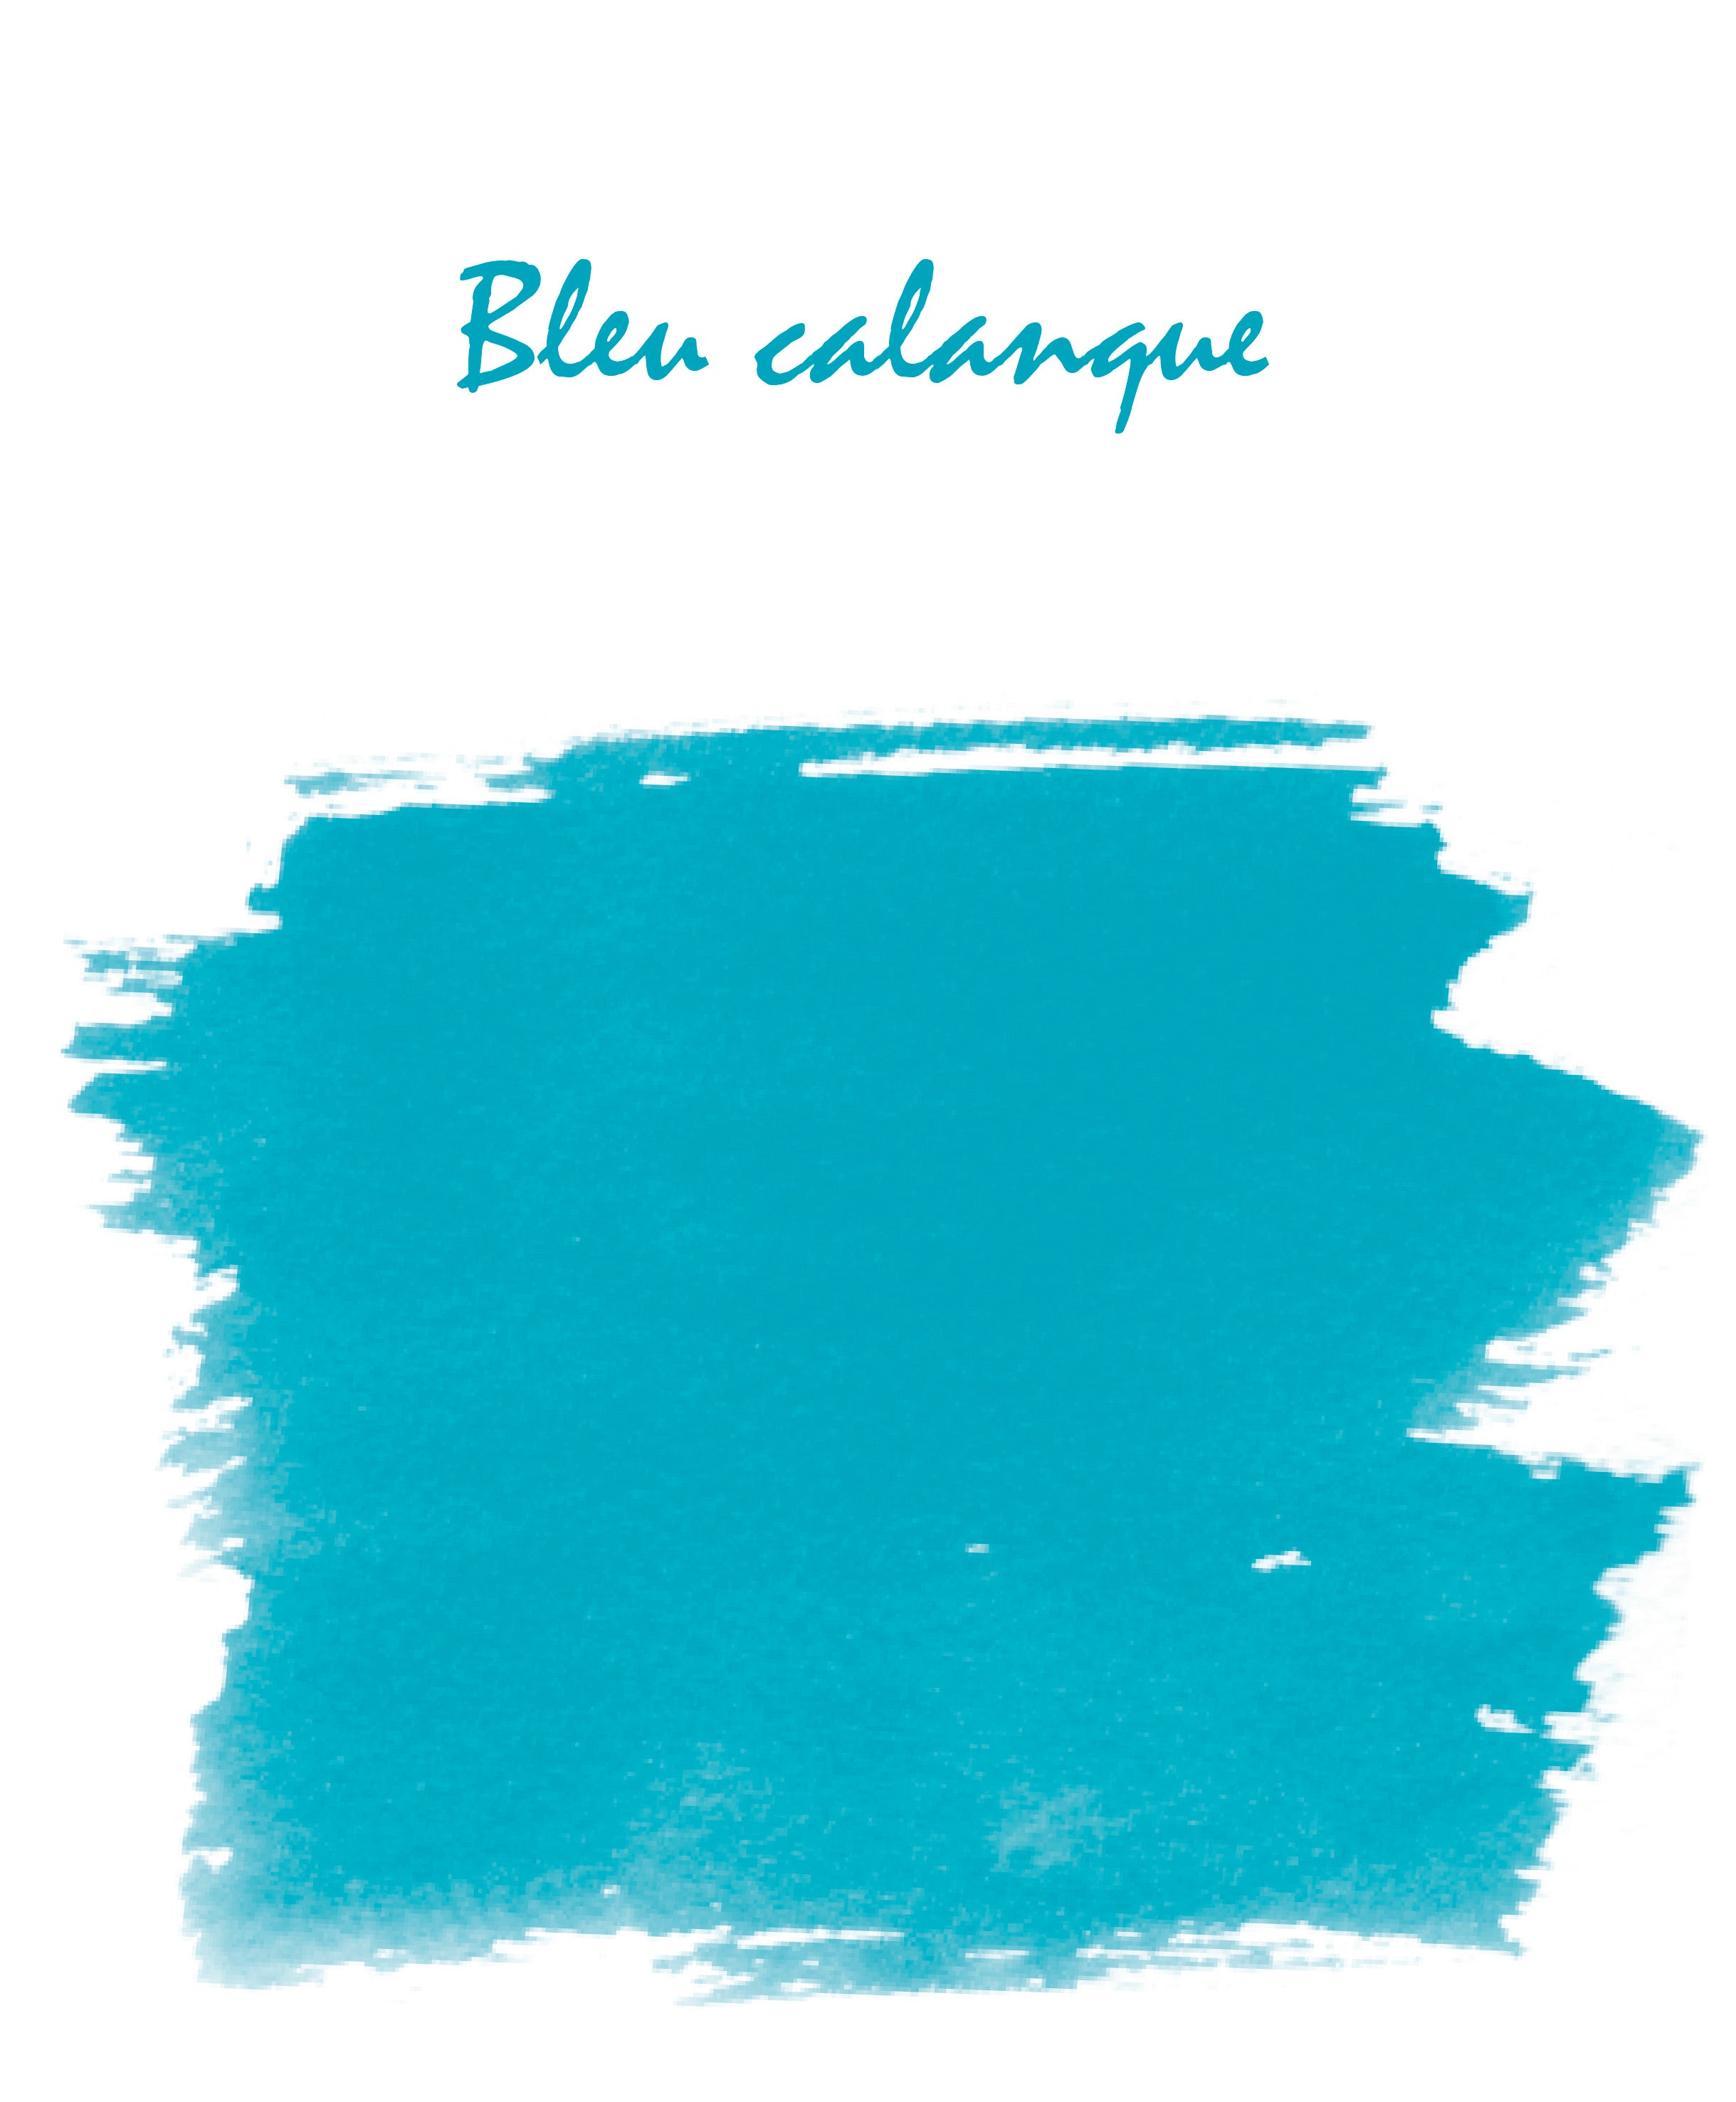 Ink Bleu Calanque, 6 cartridges